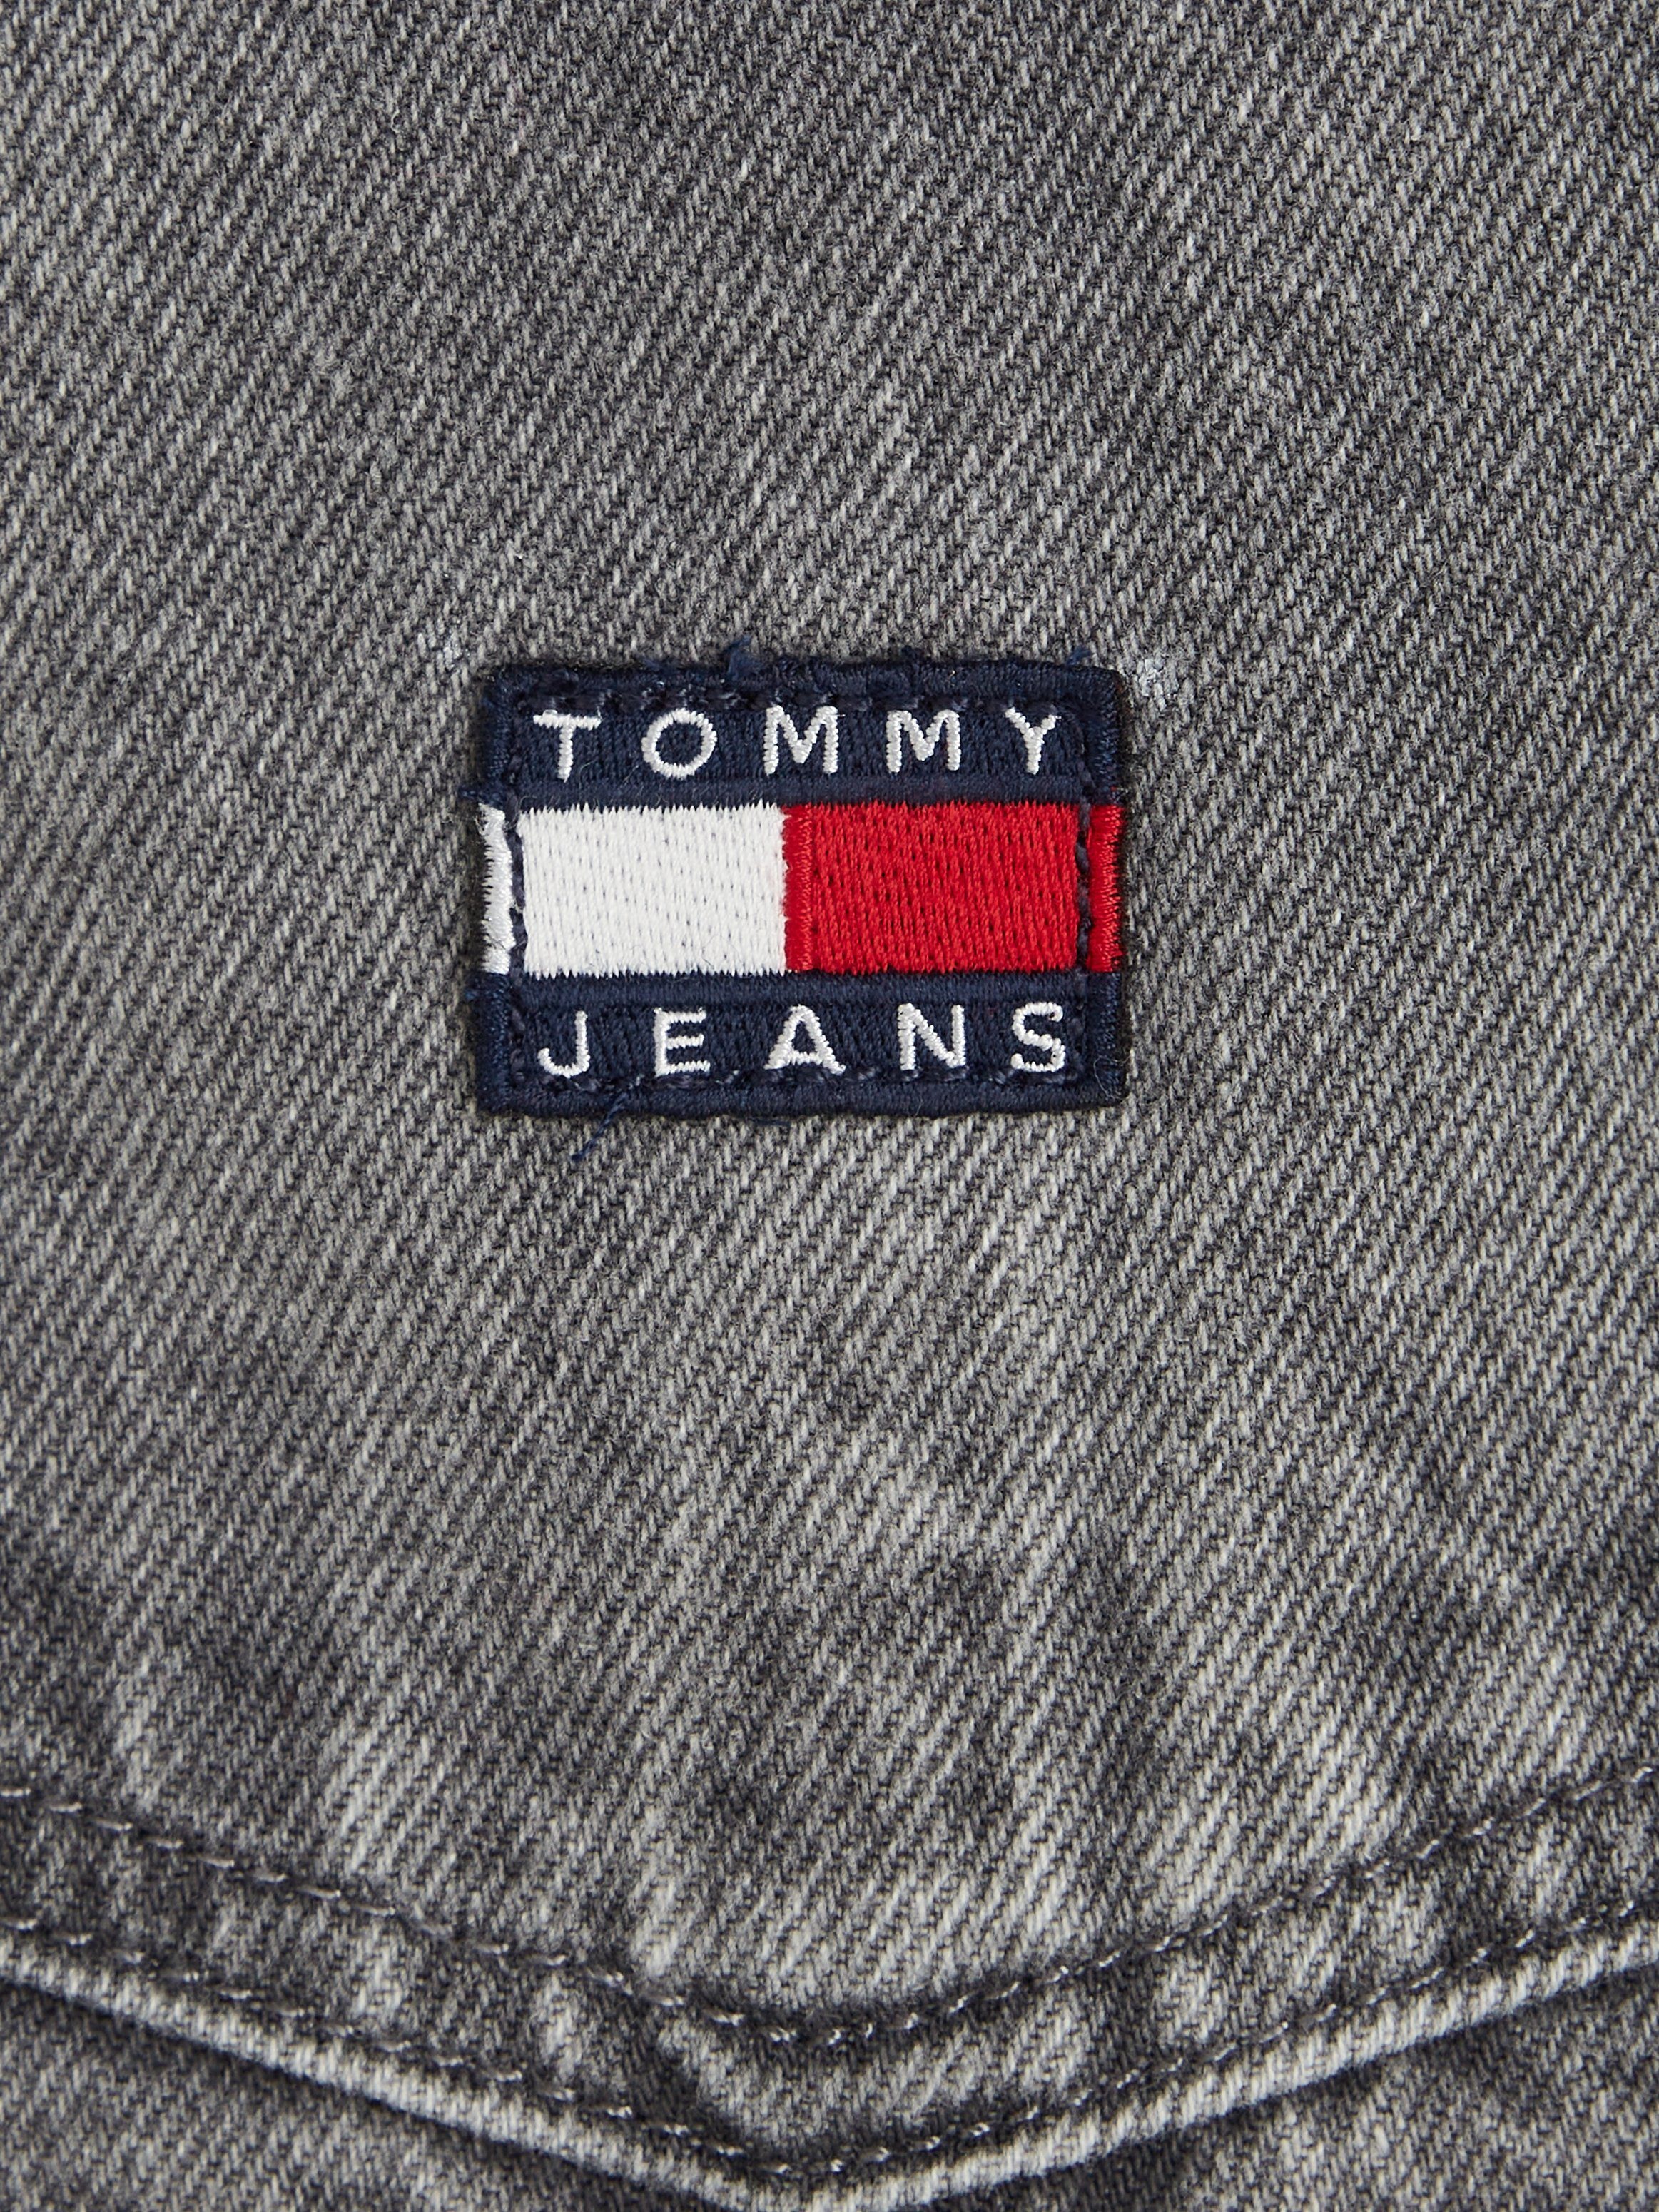 Jeanskleid DRESS PINAFORE Jeans mit Markenlabel DG4072 Tommy Tommy Jeans